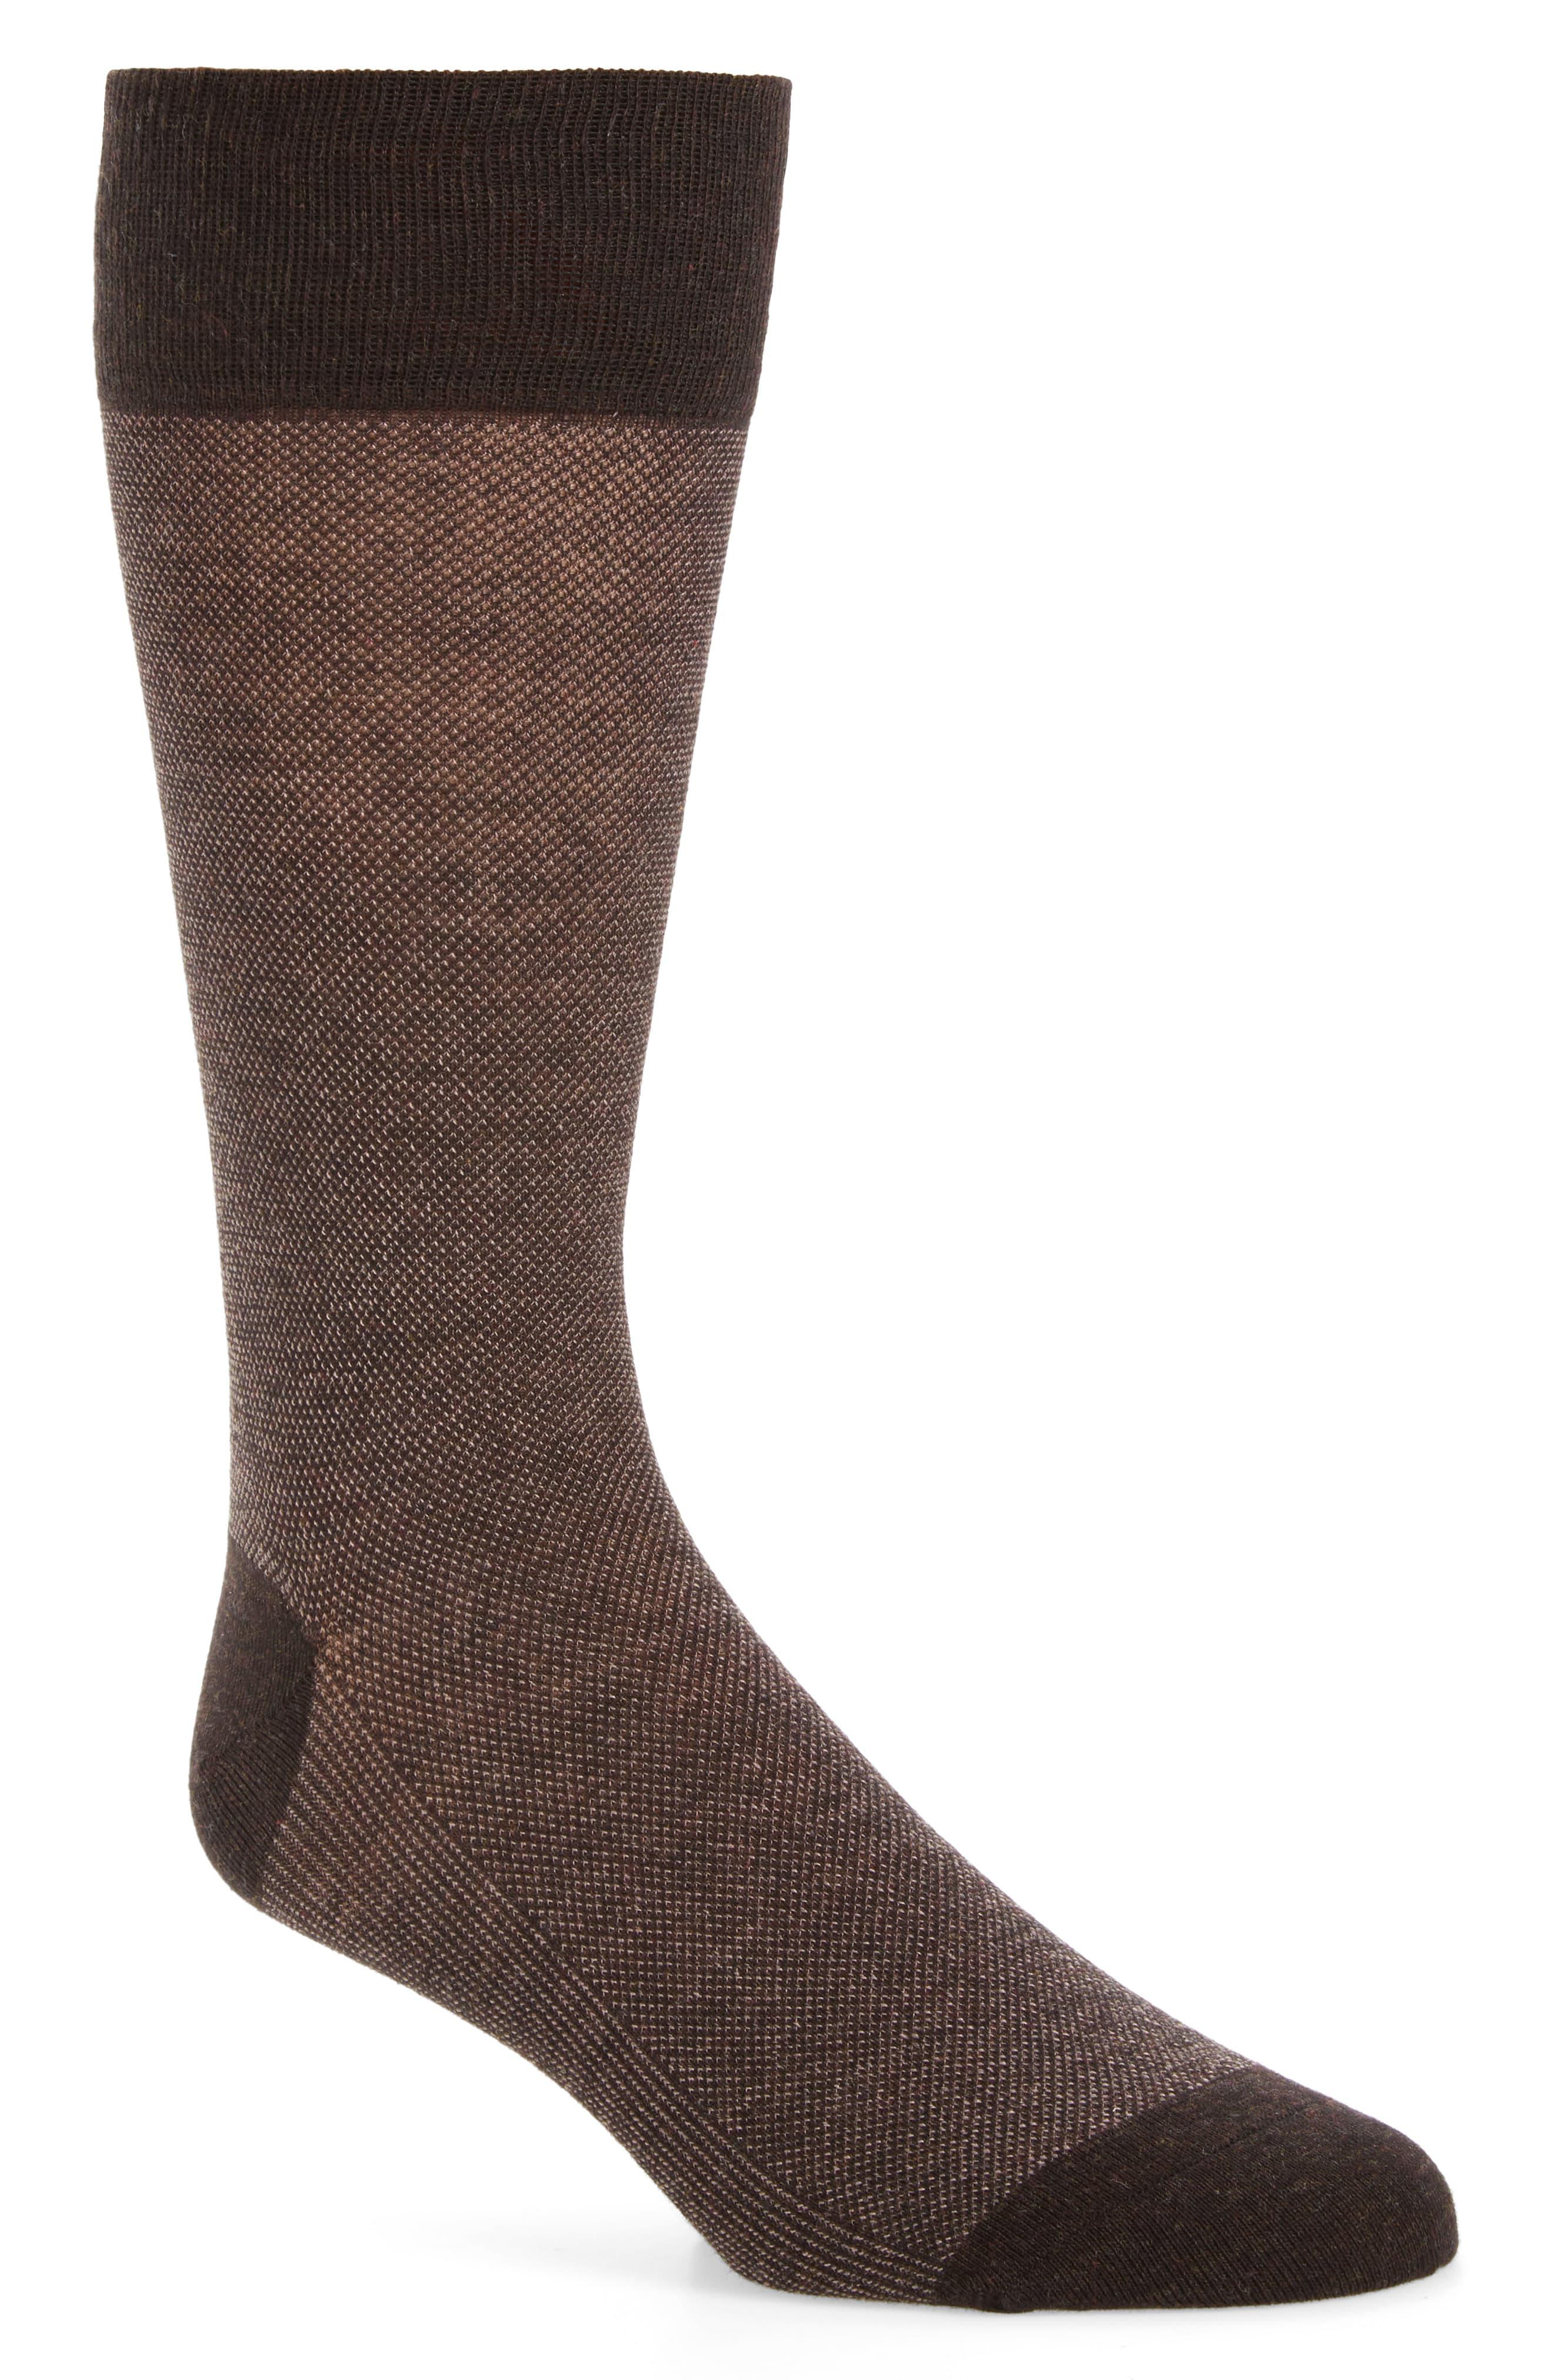 Cole Haan Piqué Texture Crew Socks in Chestnut Heather (Brown) for Men ...